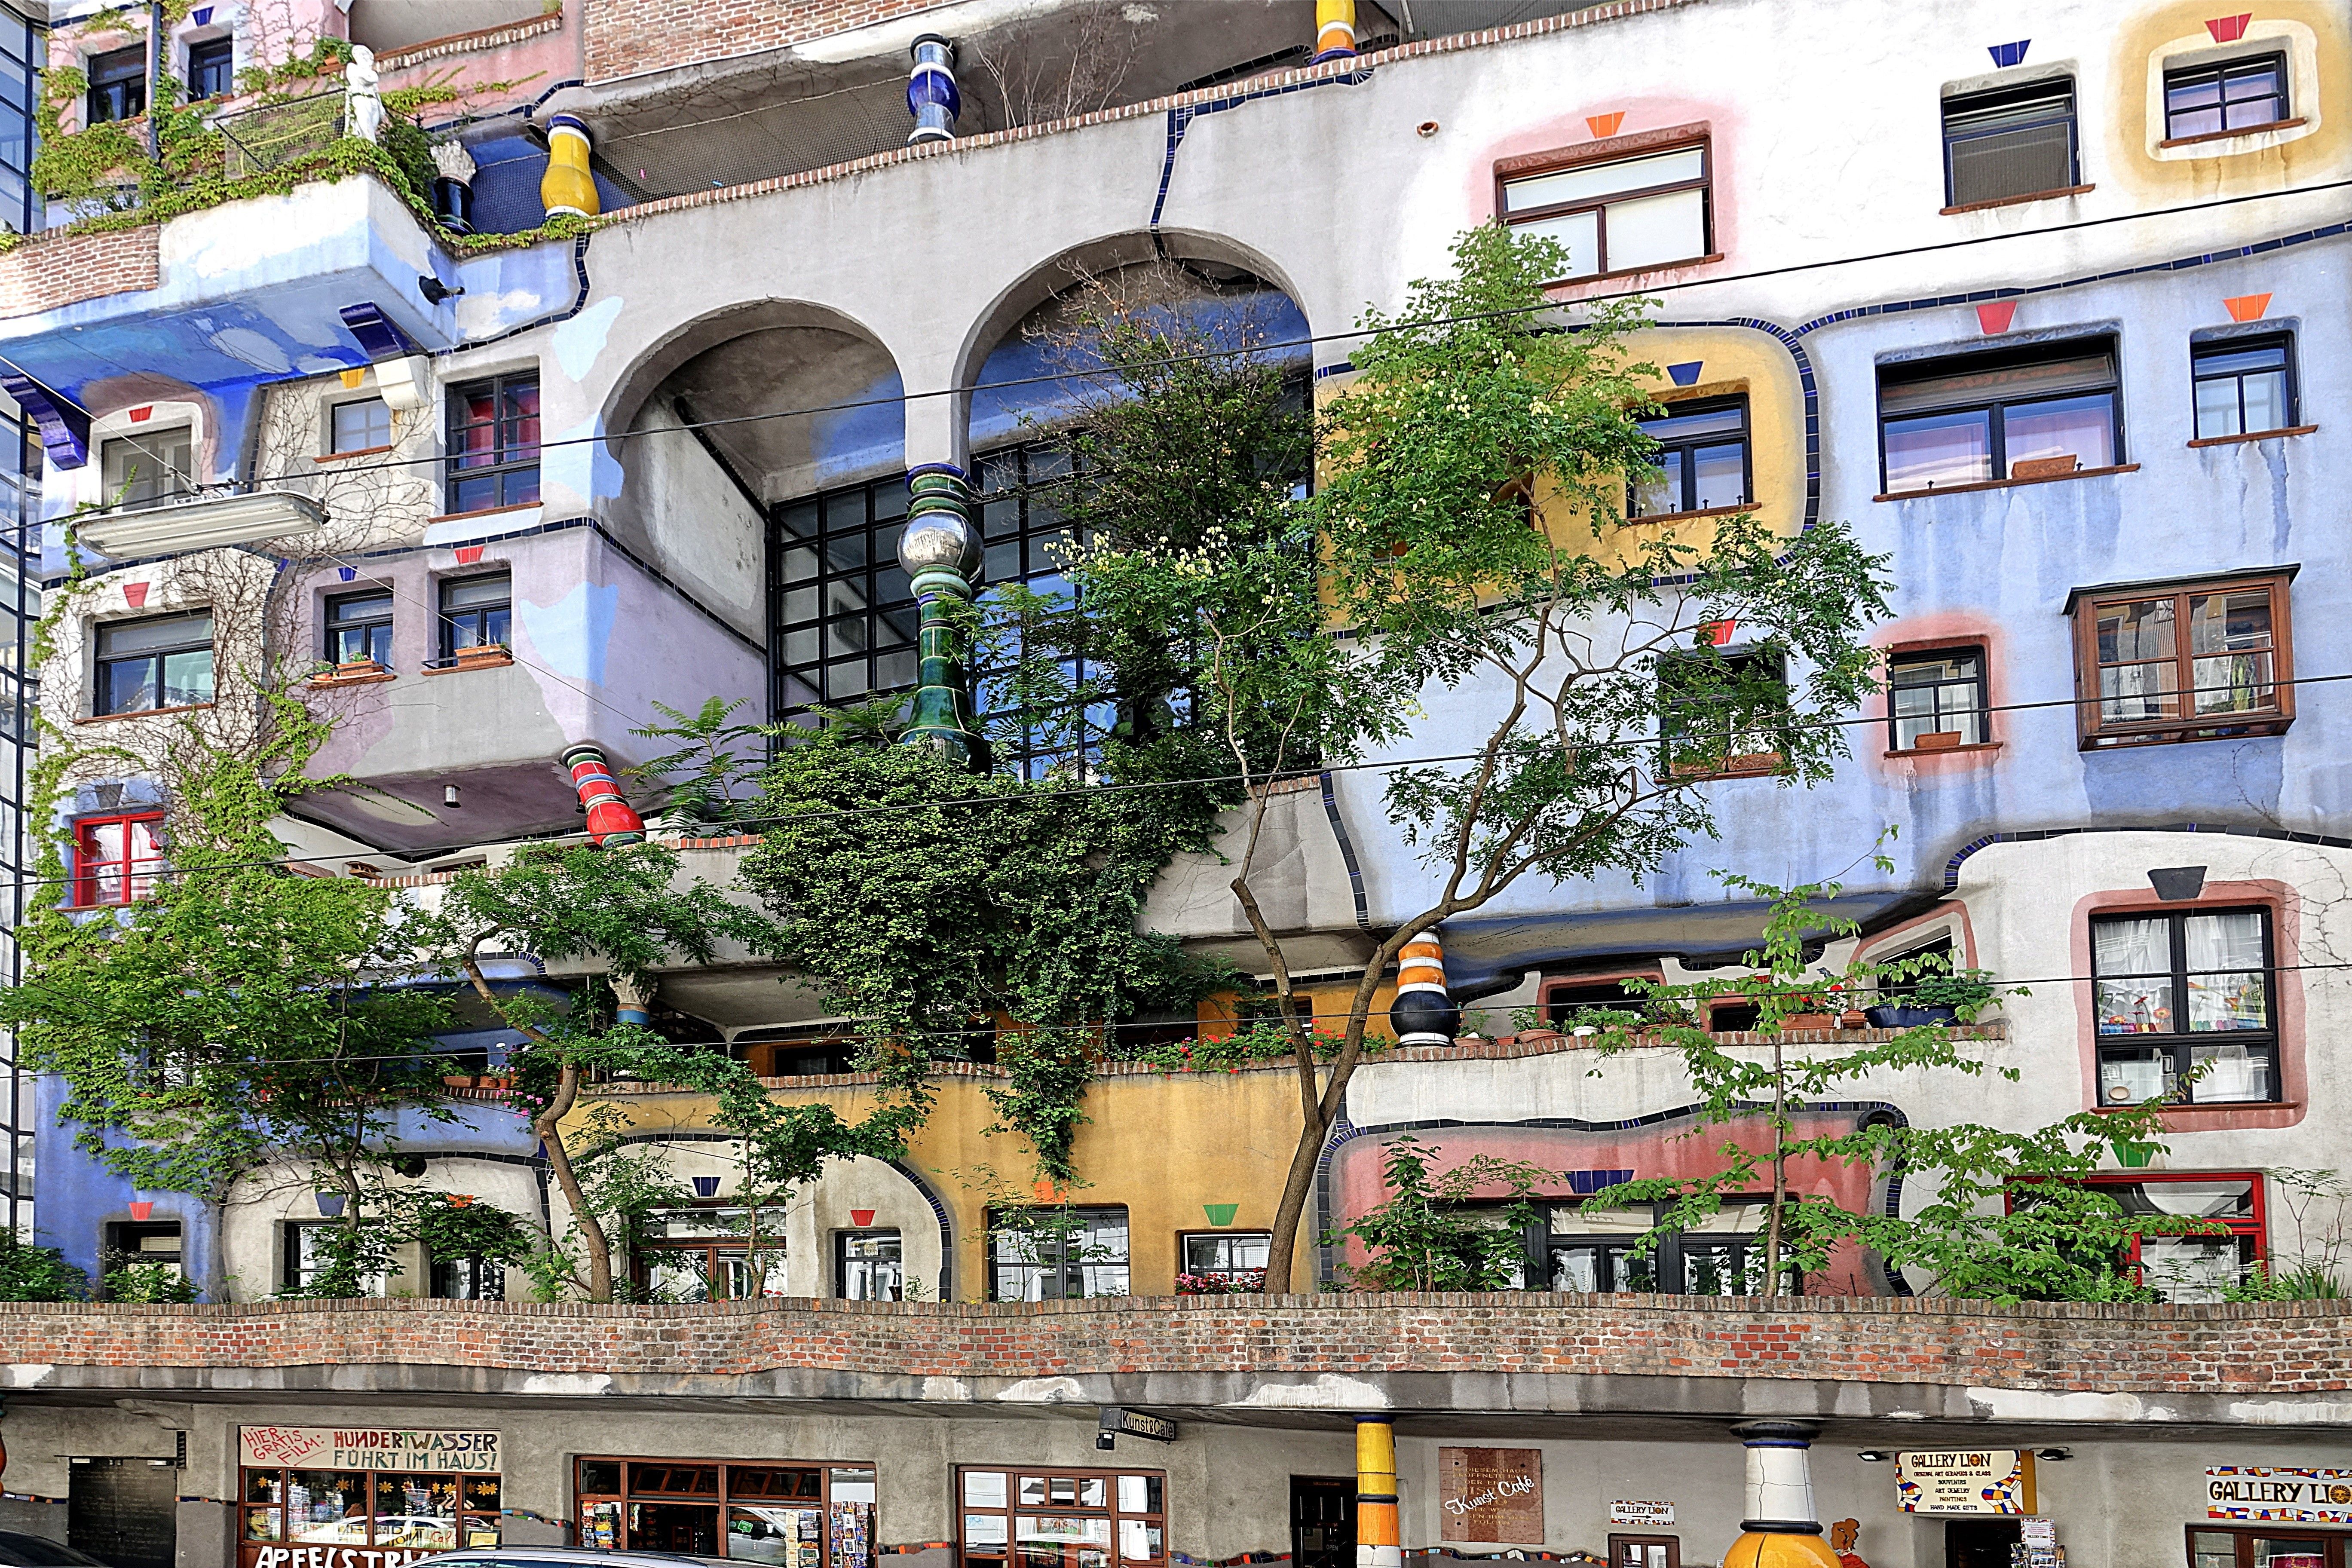 Cosas que ver gratis en Viena: explora la Villa de Hundertwasser.